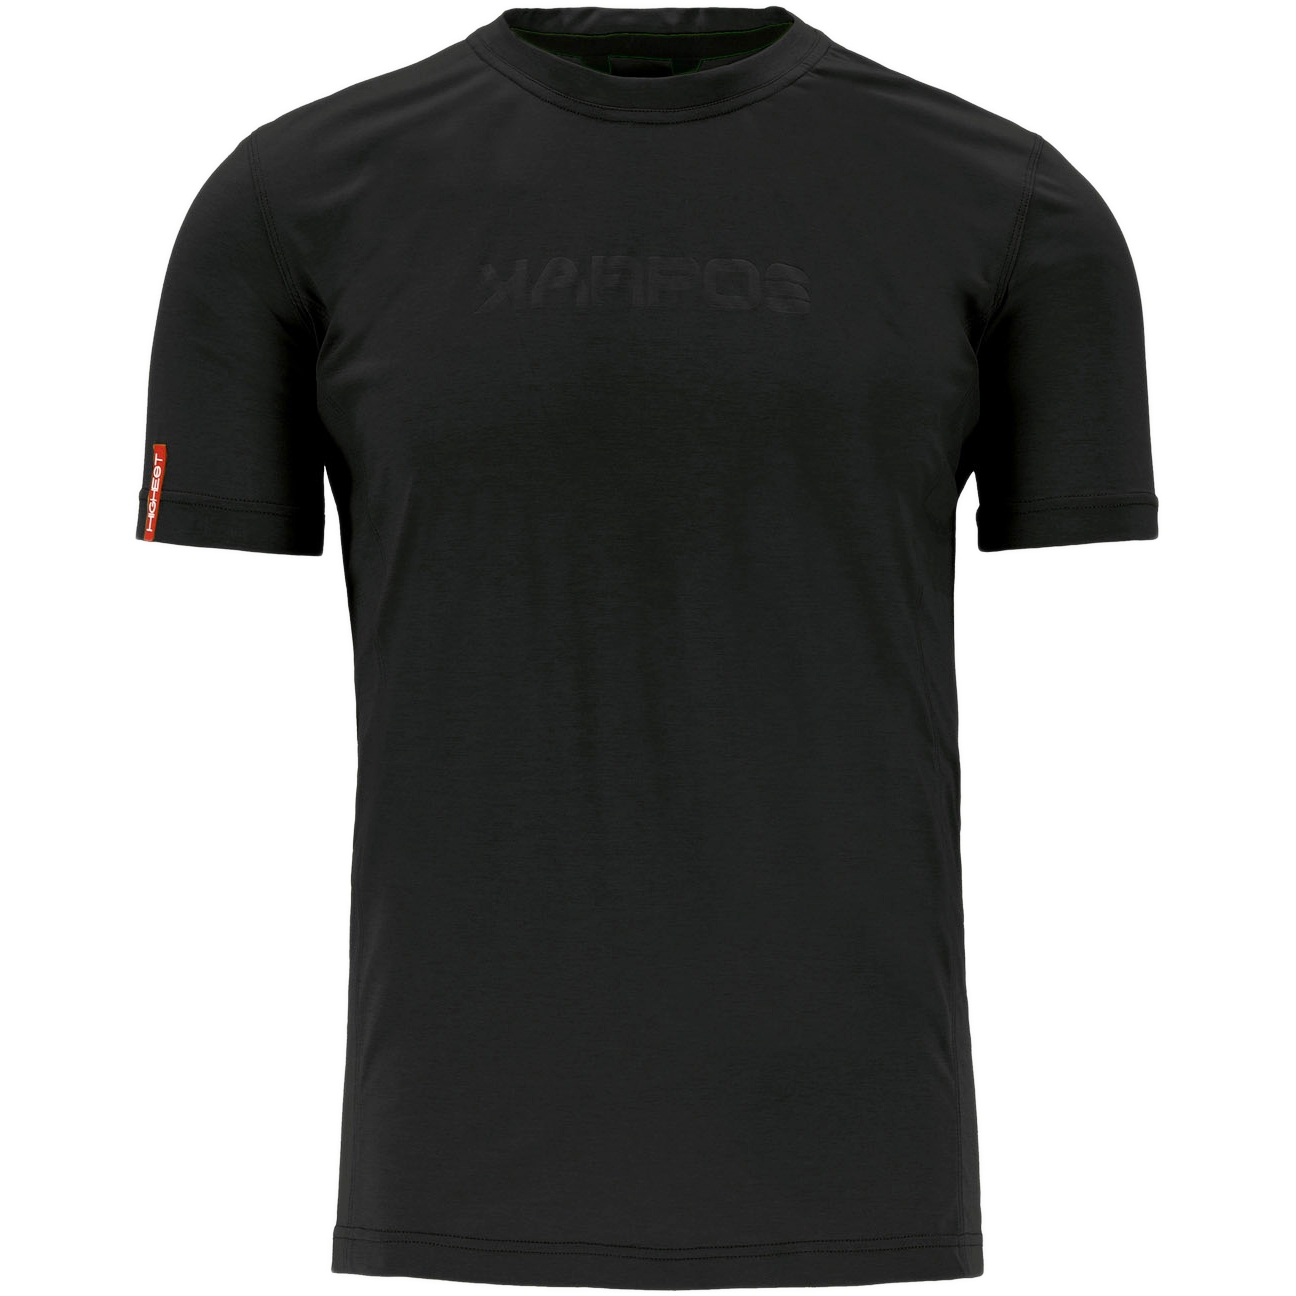 Produktbild von Karpos K-Performance T-Shirt Herren - schwarz